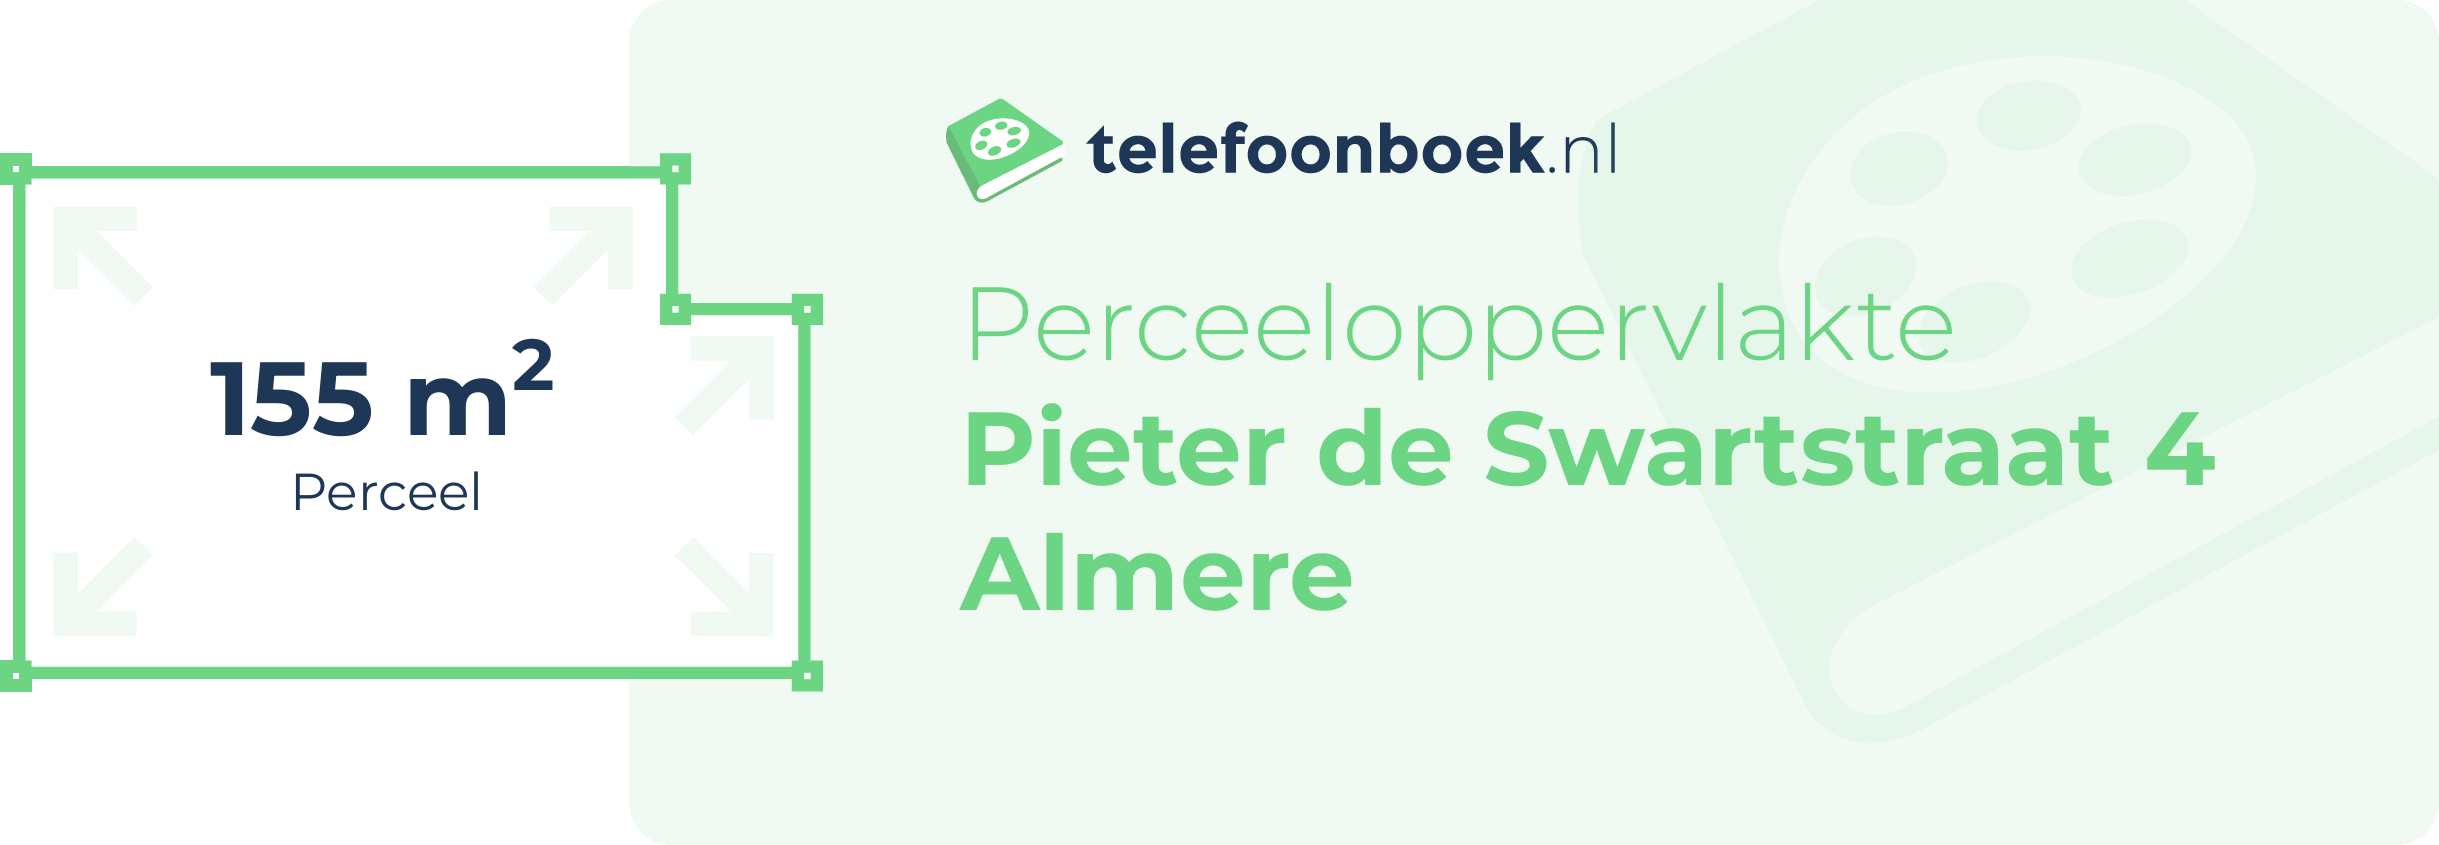 Perceeloppervlakte Pieter De Swartstraat 4 Almere